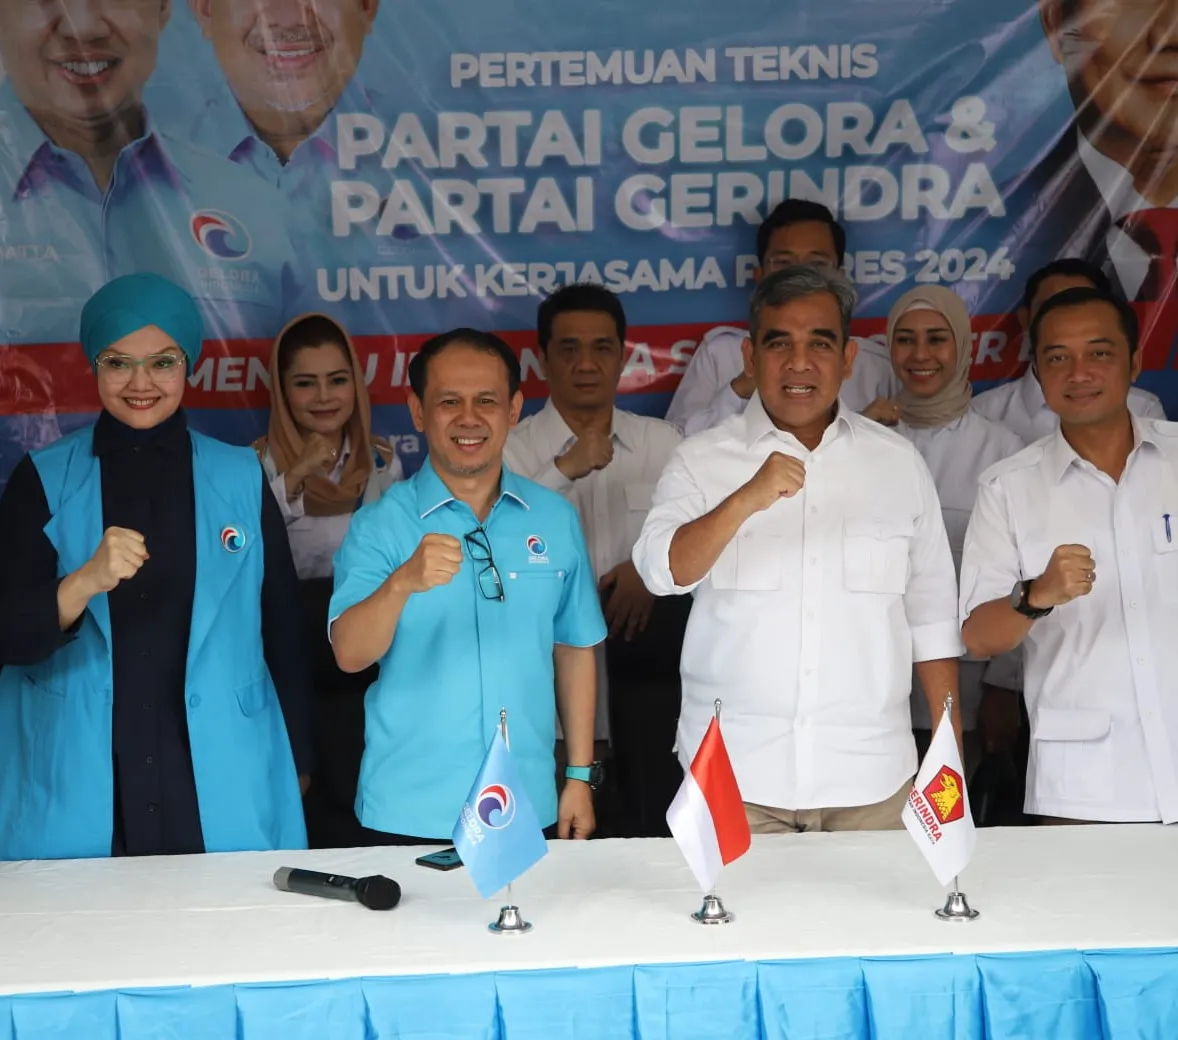 Antisipasi Kecurangan Pemilu 2024, Partai Gelora Siapkan 70 Pengacara